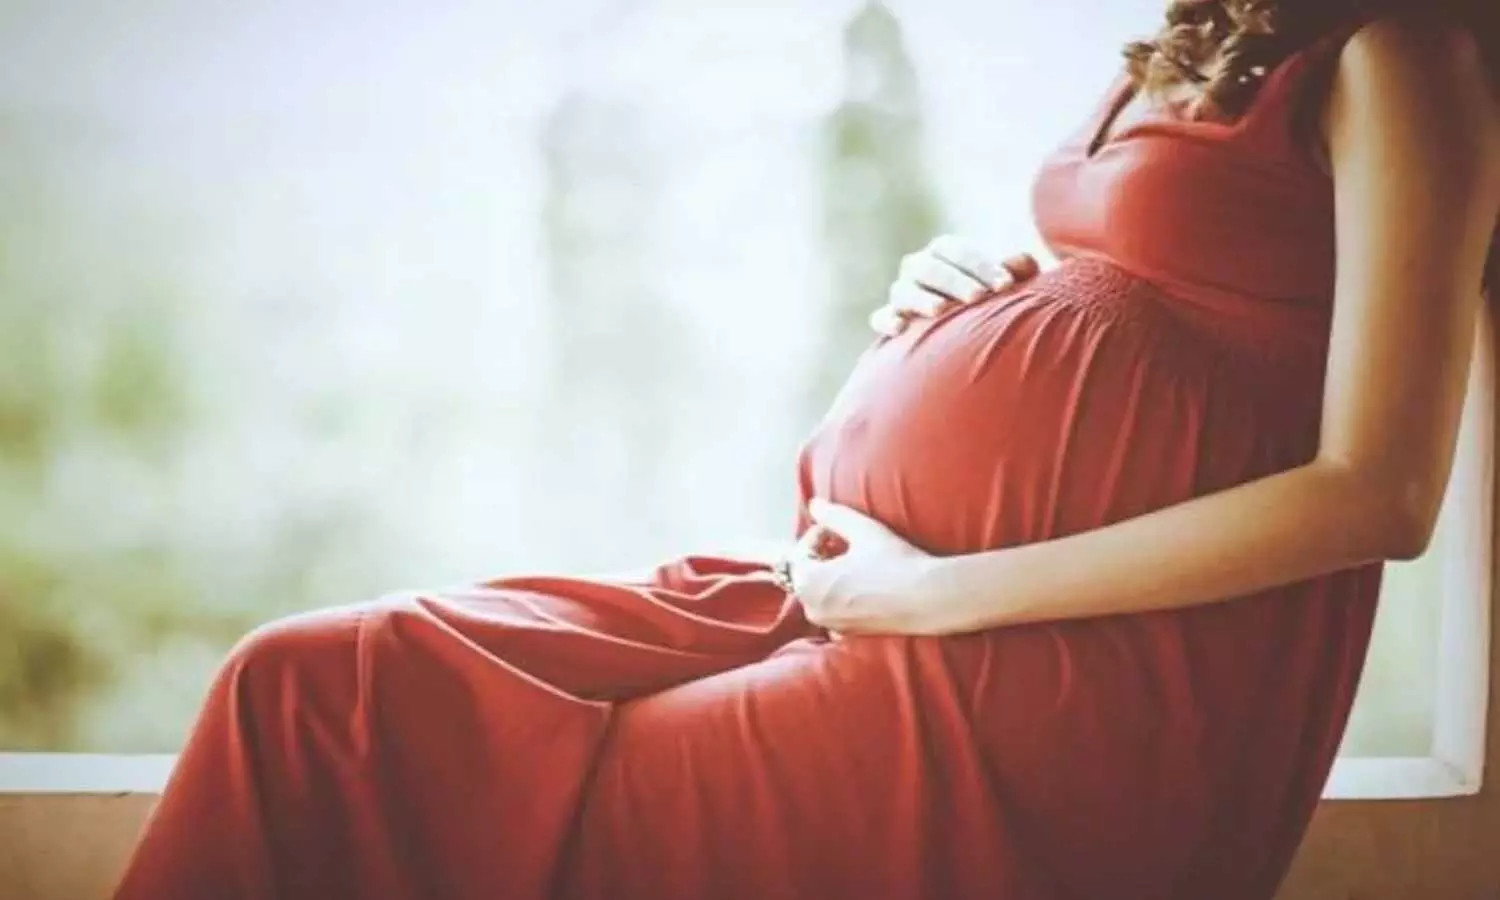 Coronavirus: गर्भवती महिलाओं को कोरोना का खतरा! तेजी से बना रहा निशाना